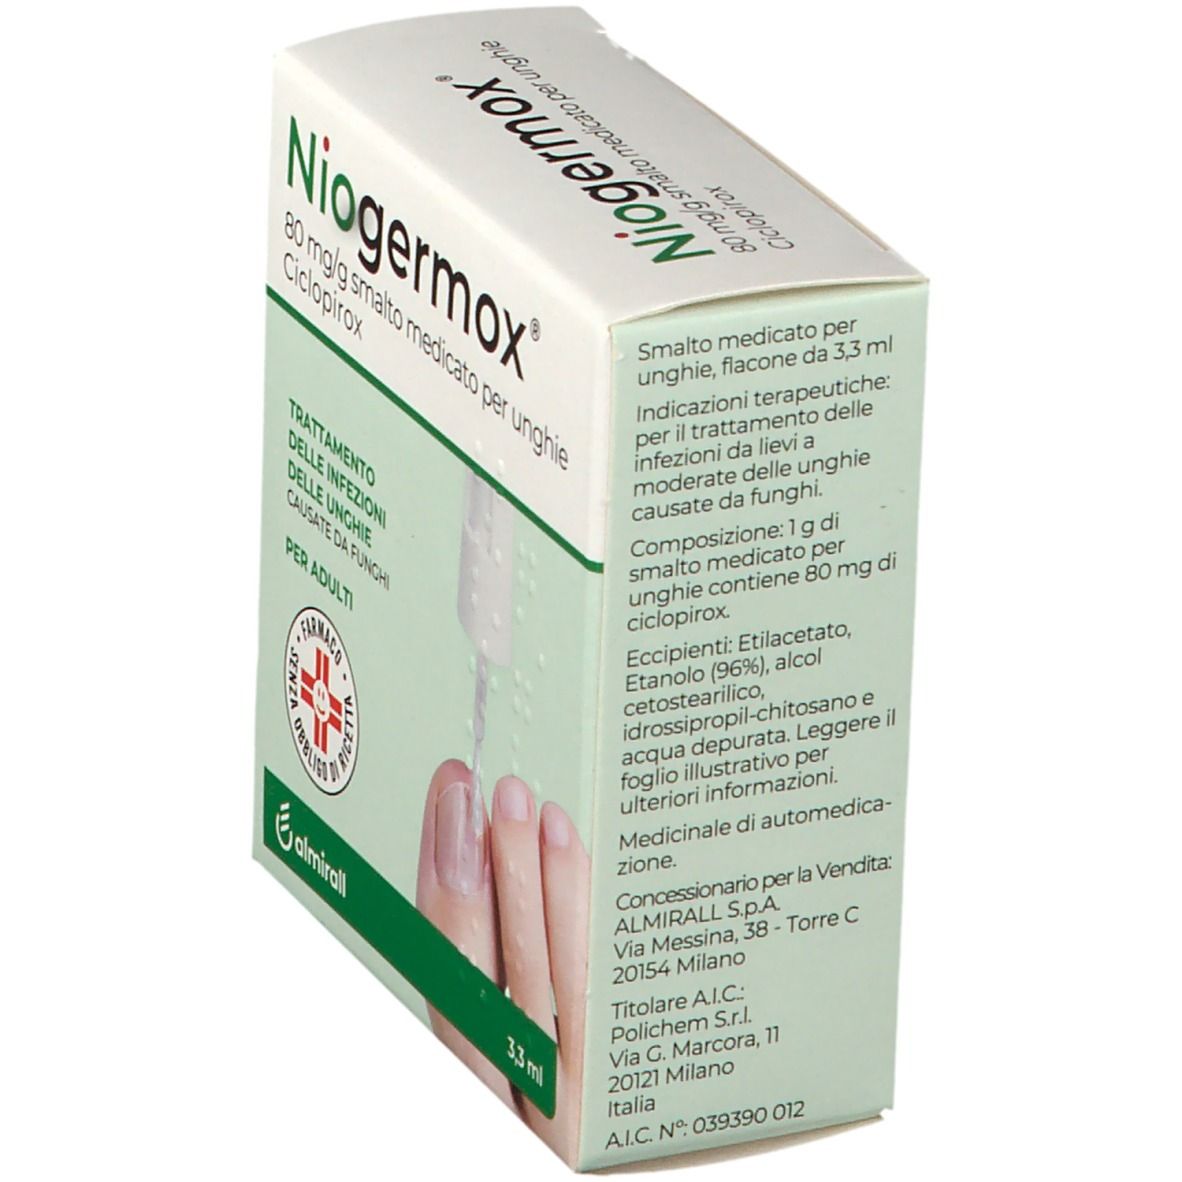 Niogermox® 80 mg/g smalto medicato per unghie 3,3 ml